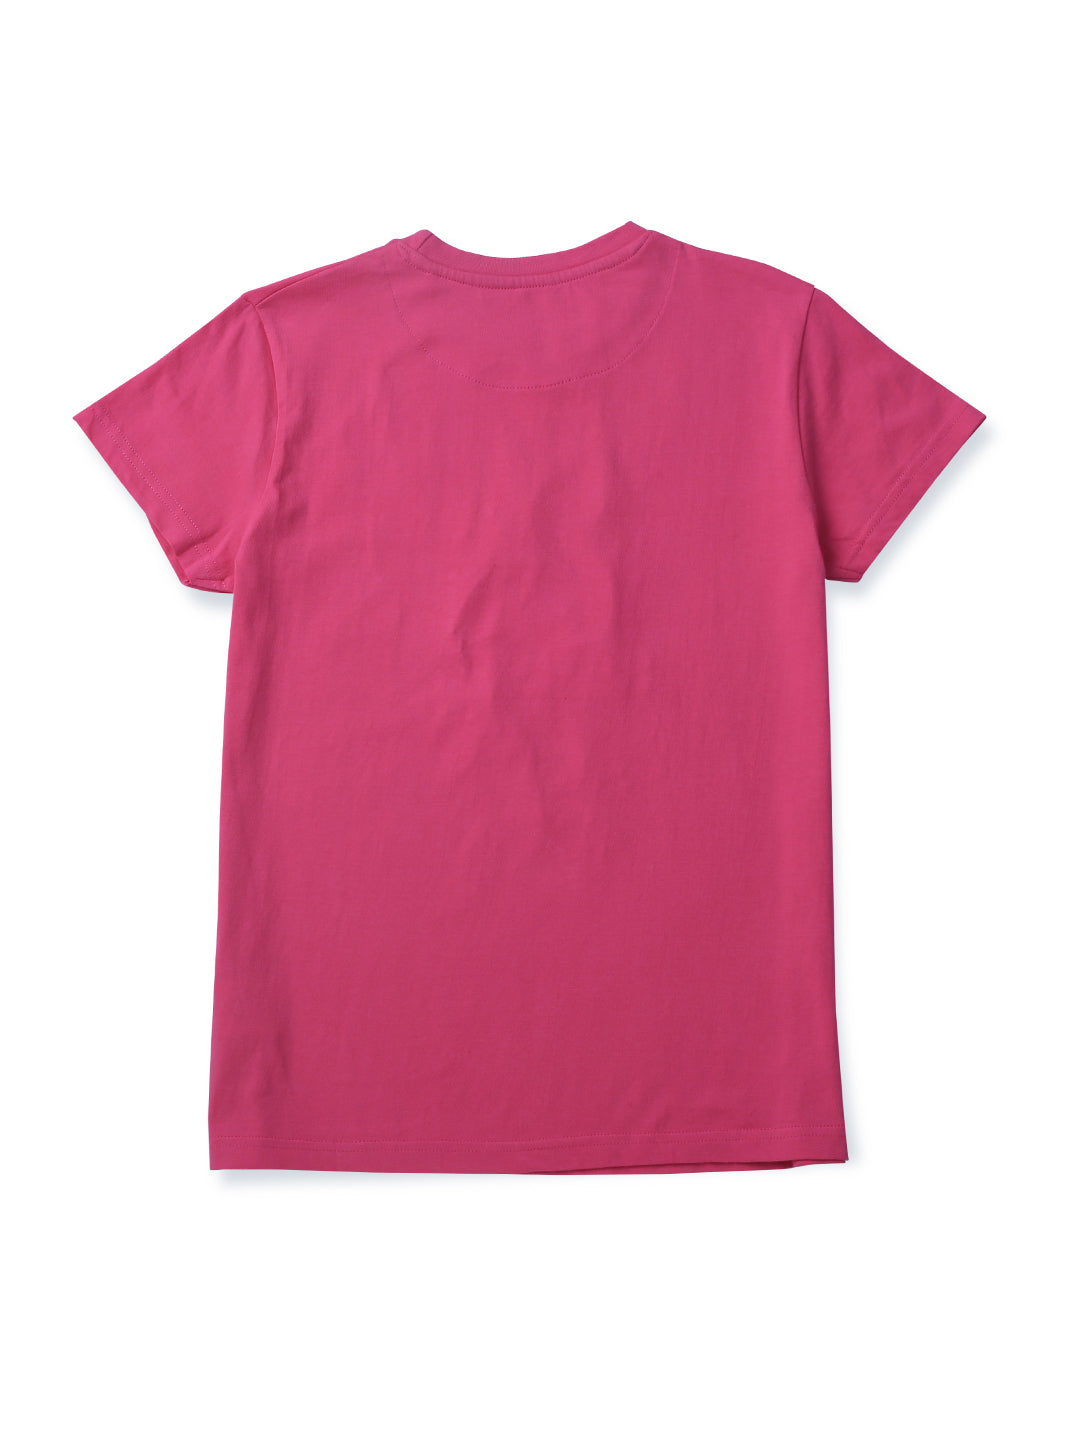 Girls Pink Printed Cotton Knits Top